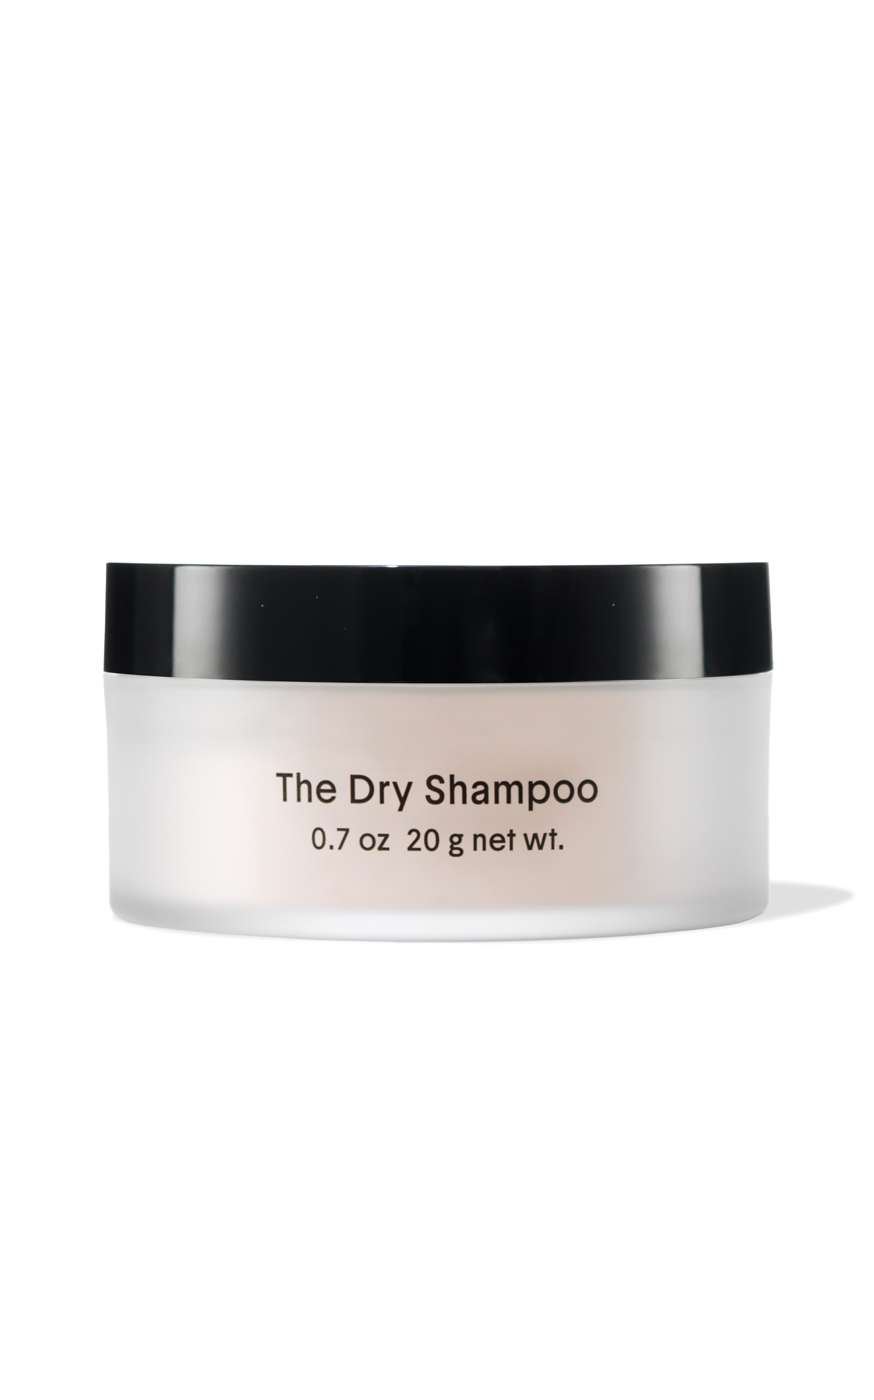 32 Crown Affair, The Dry Shampoo, Modaoperandi.com